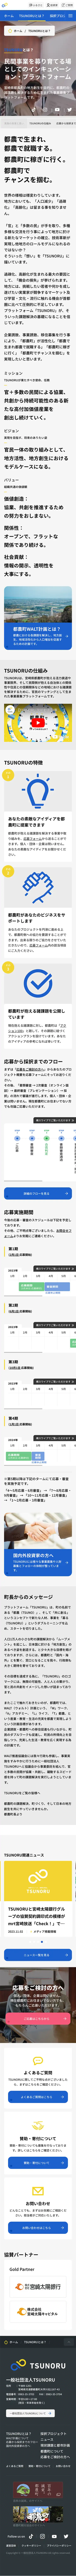 TSUNORU（つのる） – 宮崎県都農町の事業募集プラットフォームのモバイルサイズのAboutページ画像